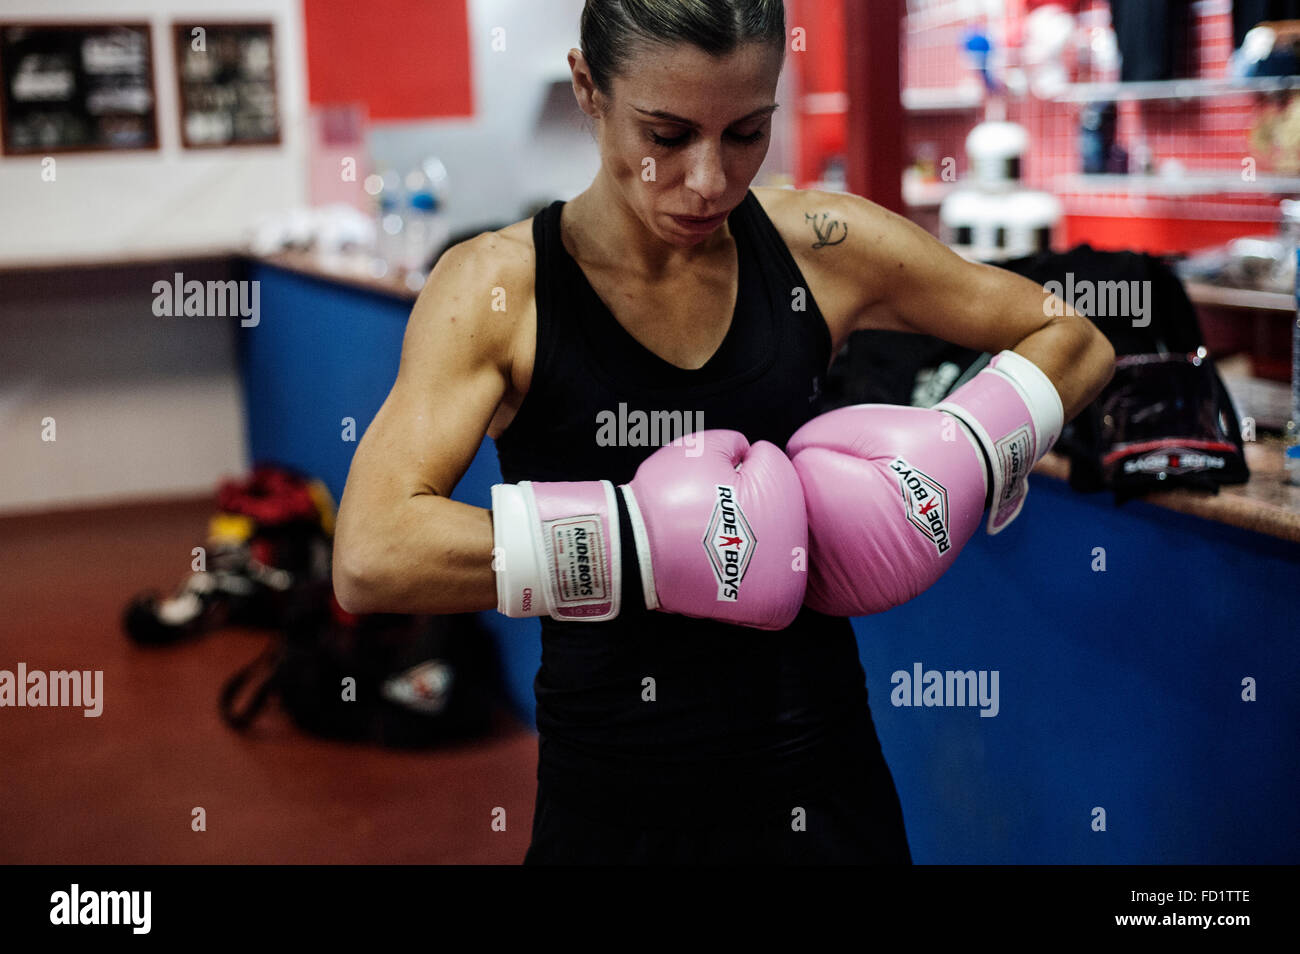 Marian concentrada antes de empezar un combate de boxeo en el club de boxeo de Elche. Stock Photo